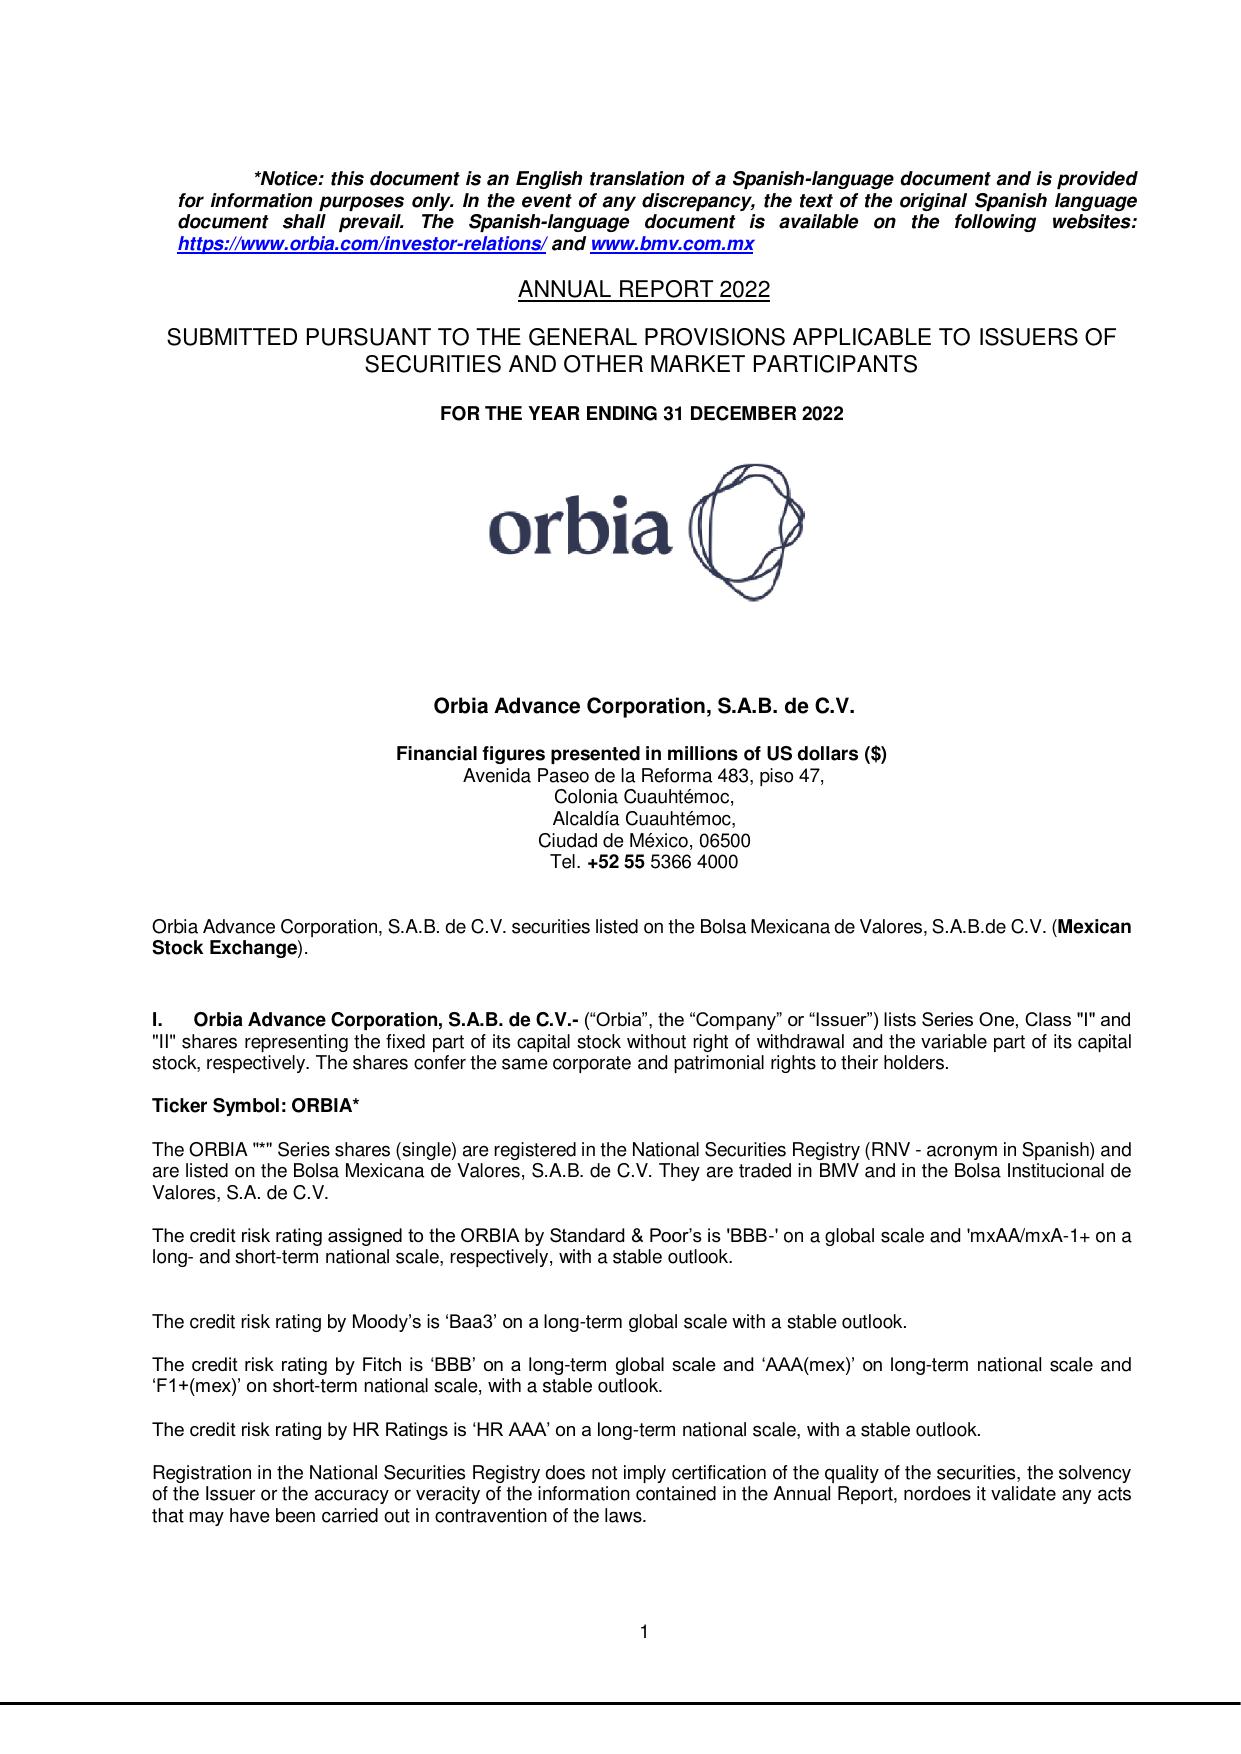 ORBIA 2022 Annual Report